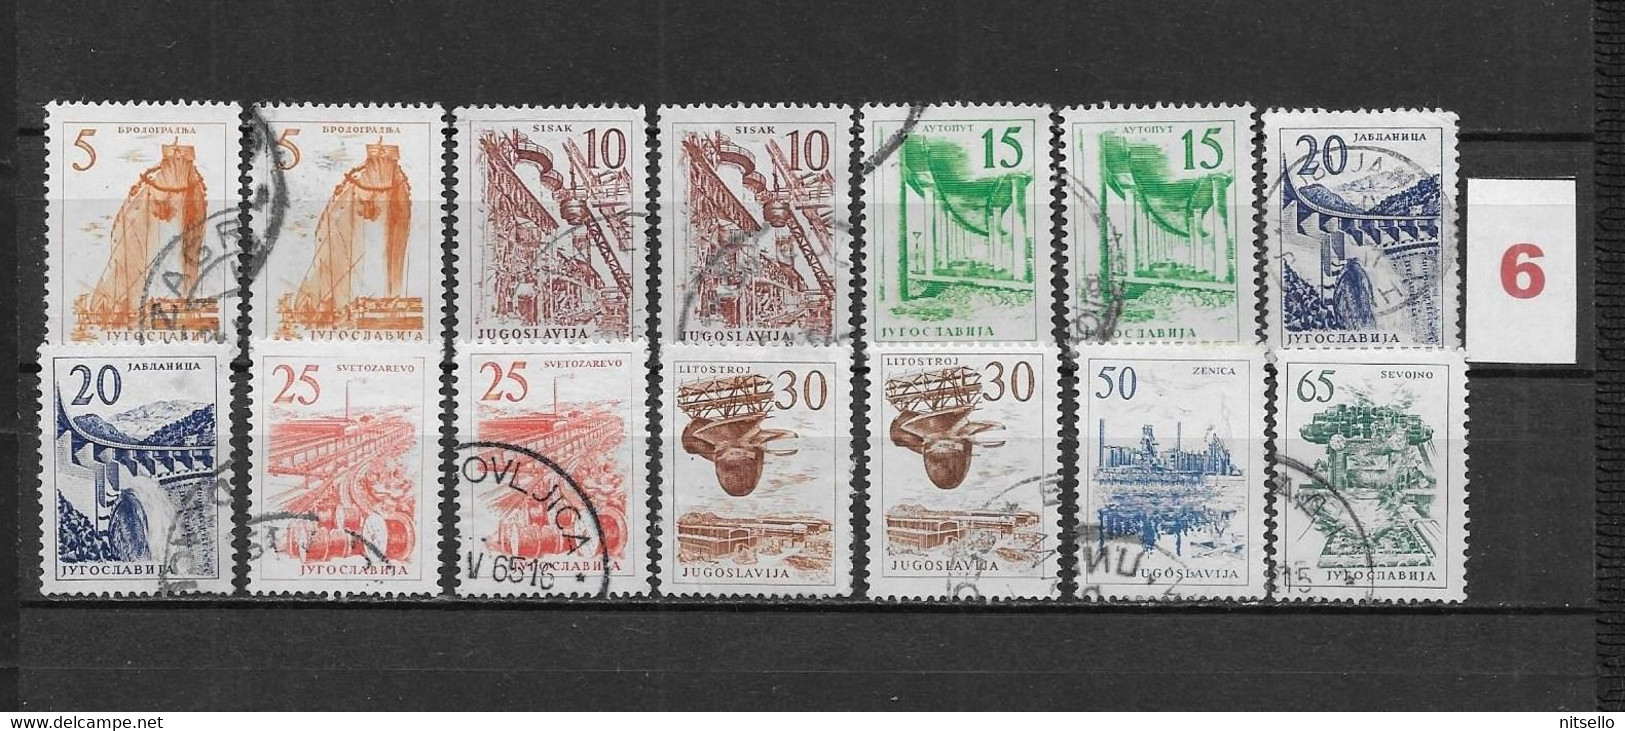 LOTE 1614  ///  YUGOSLAVIA 1958  LOTE  ¡¡¡ LIQUIDATION - JE LIQUIDE - LIQUIDACIÓN !!!! - Used Stamps